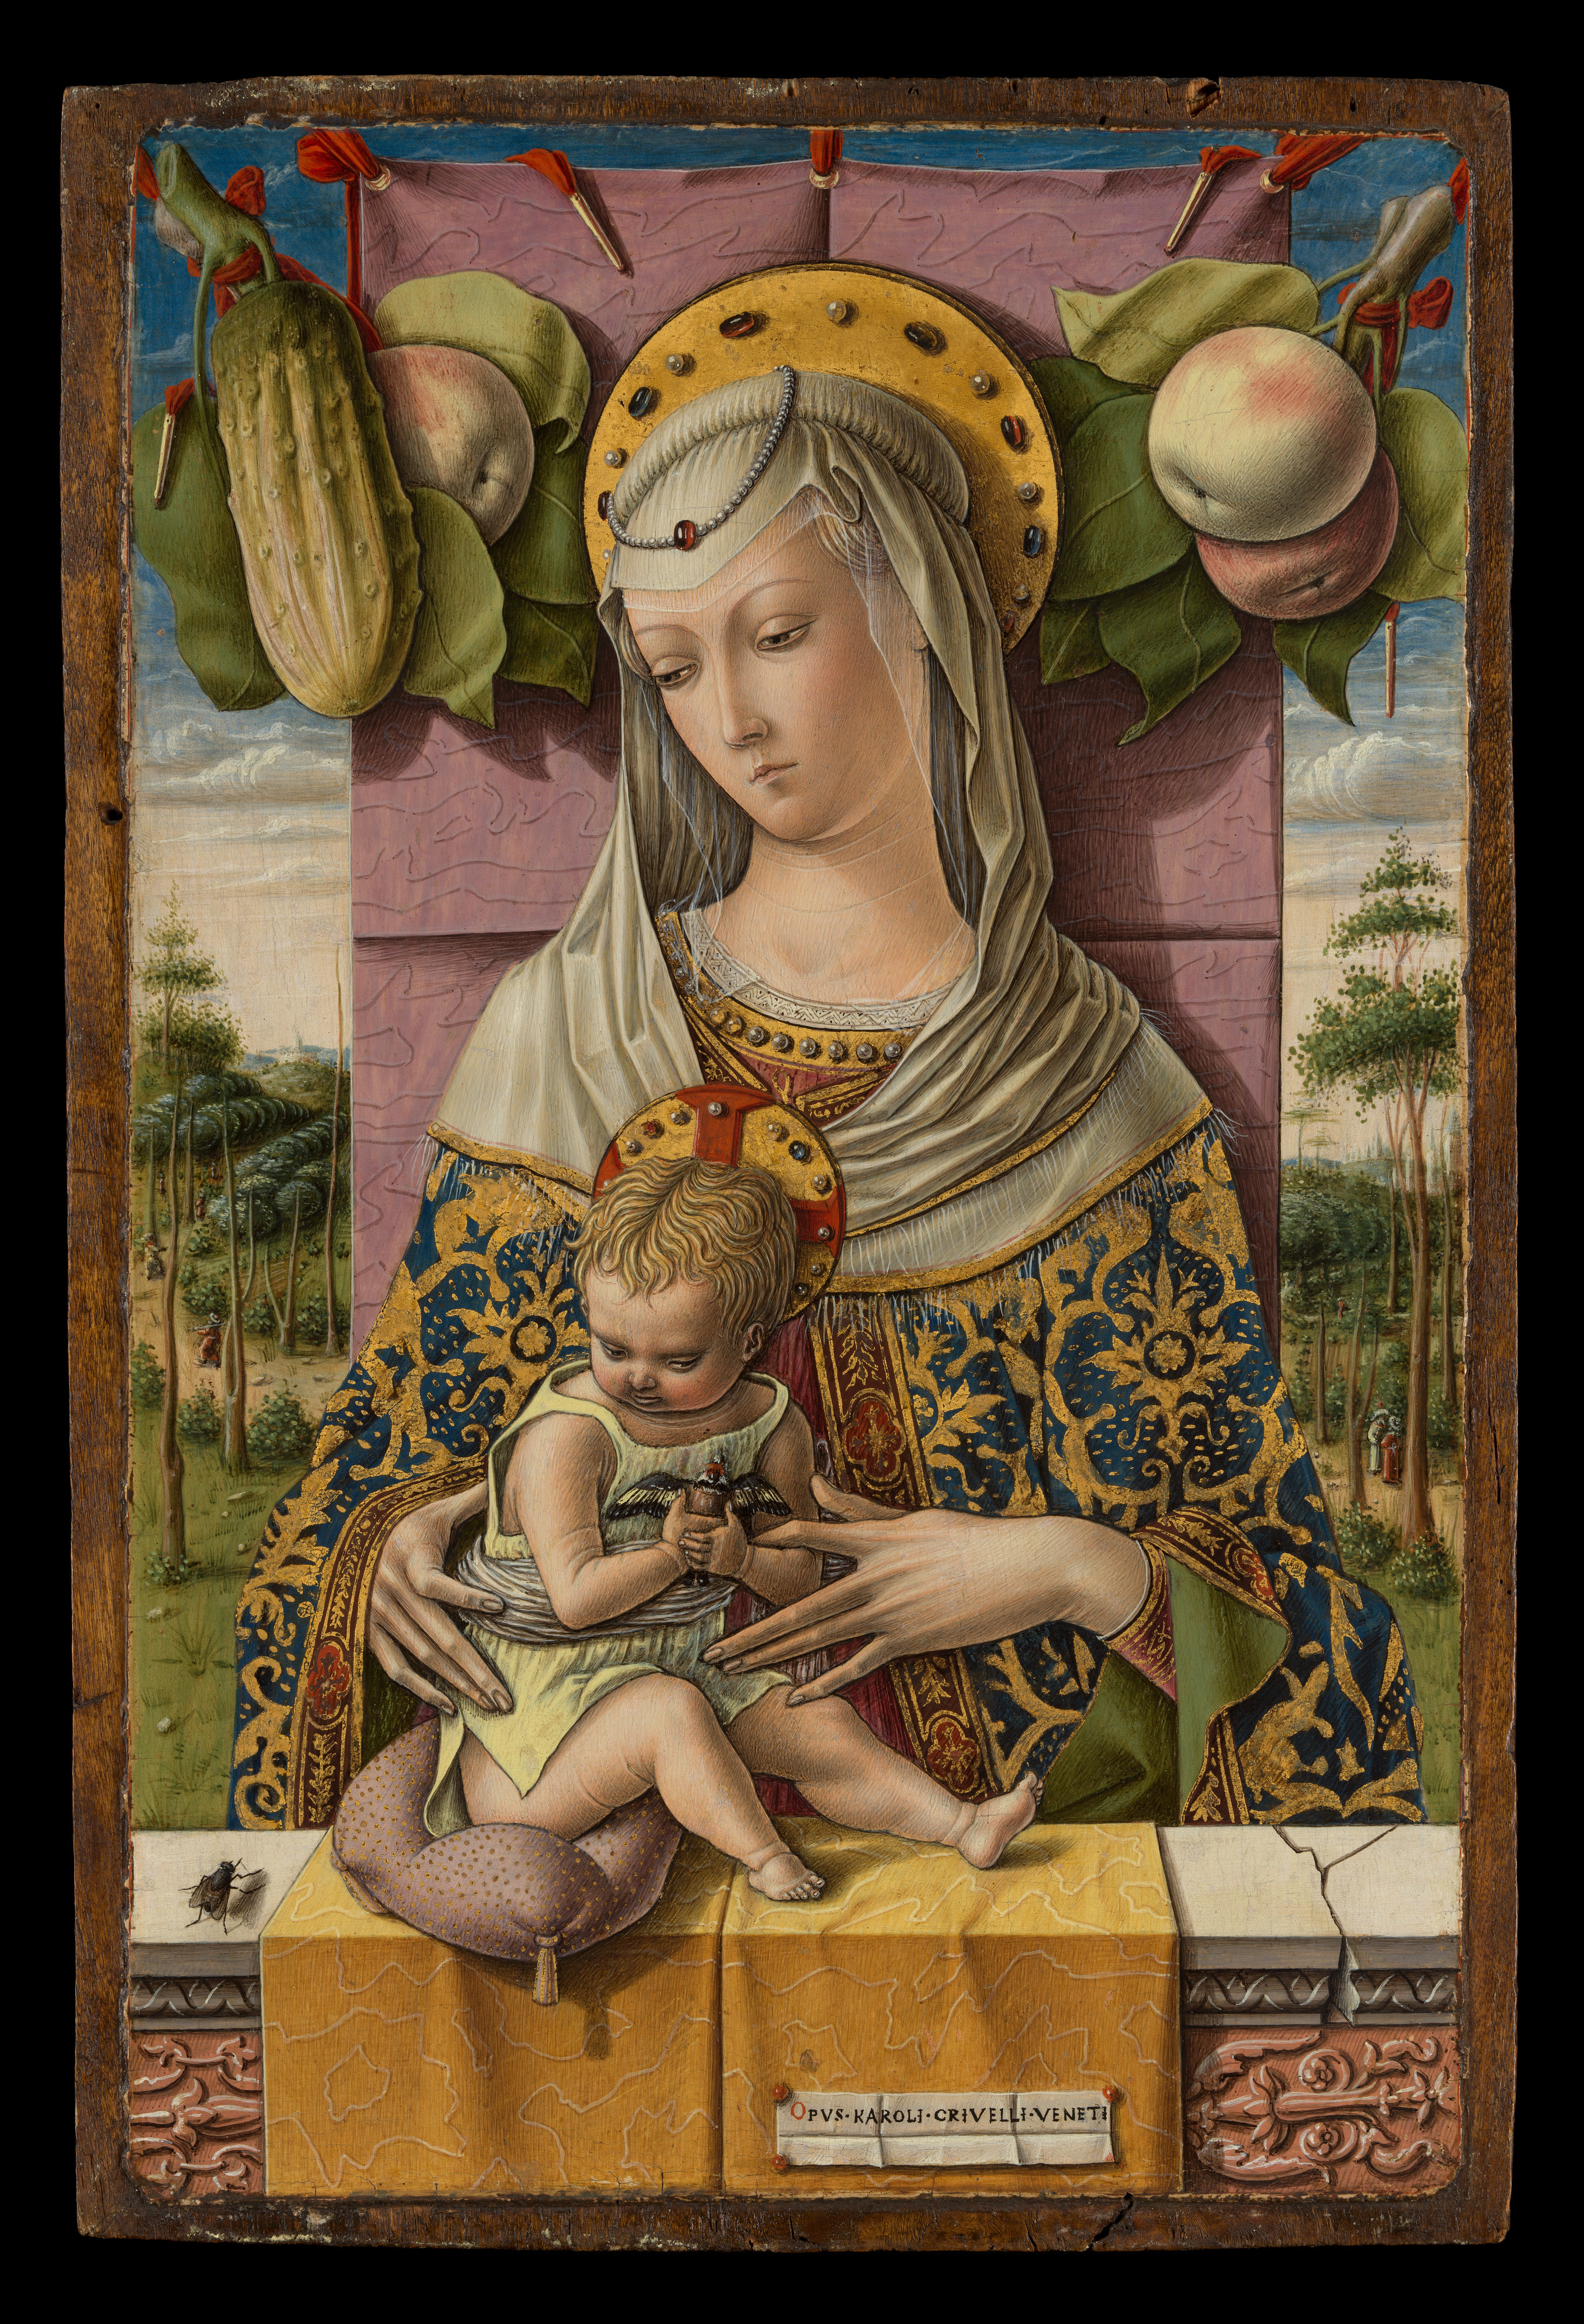 La Virgen y el niño by Carlo Crivelli - ca. 1480 - 37,8 x 25,4 cm Museo Metropolitano de Arte